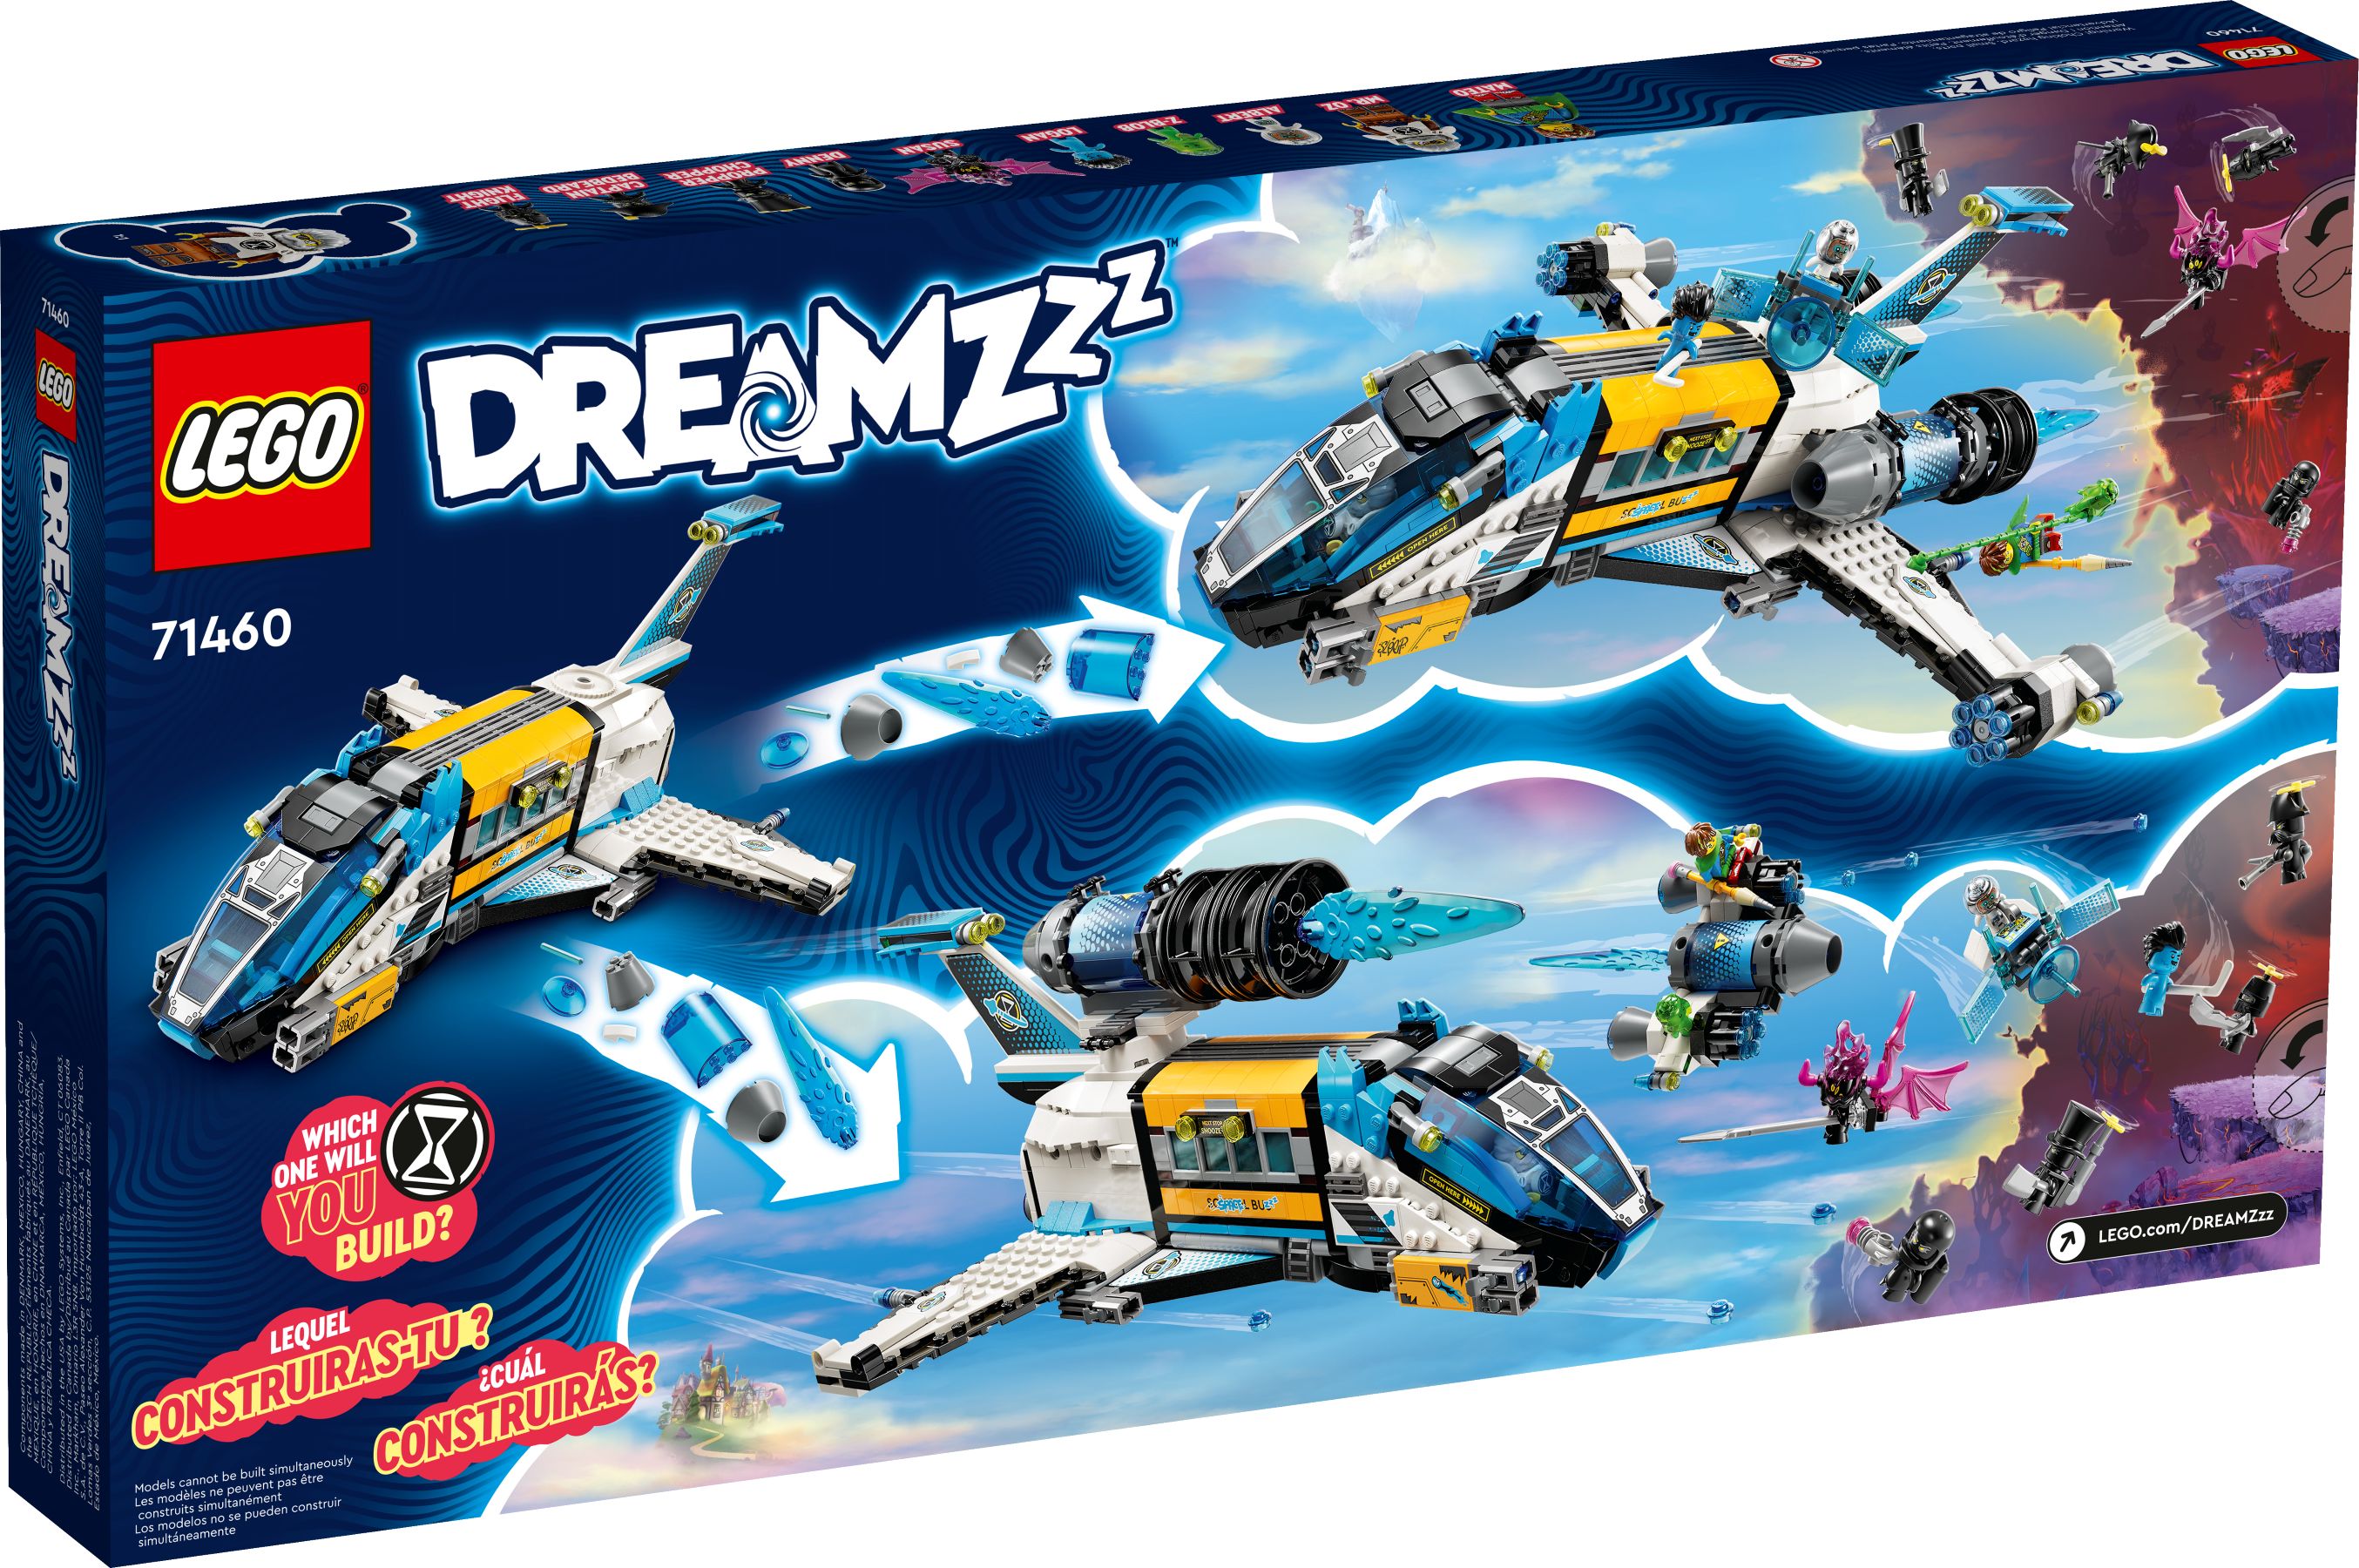 LEGO Dreamzzz 71460 Der Weltraumbus von Mr. Oz LEGO_71460_alt2.jpg